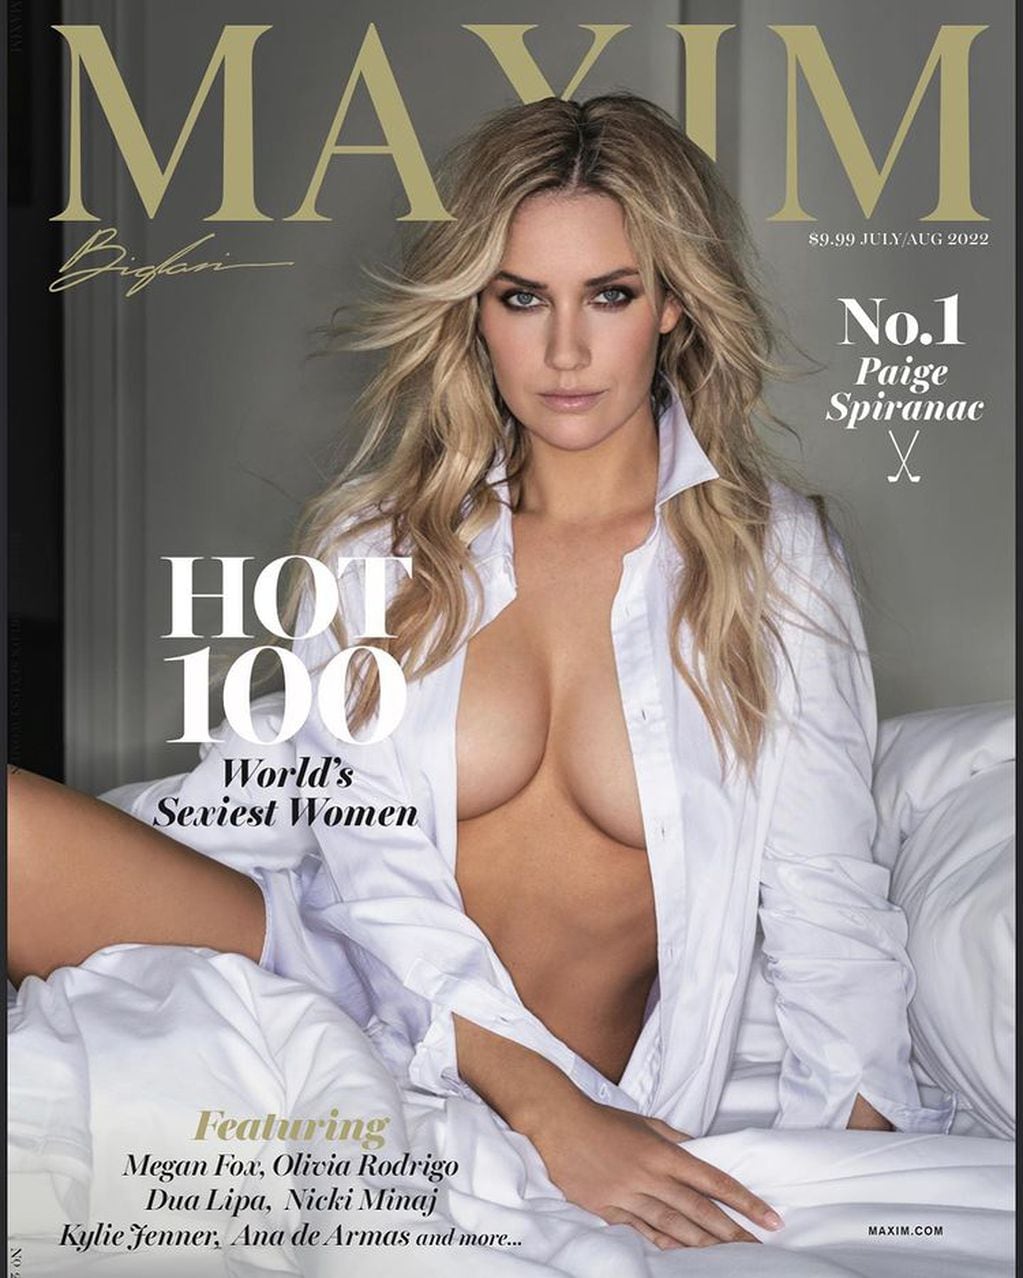 Paige Spiranac fue nombrada la mujer viva más sexy del mundo por la revista Maxim.